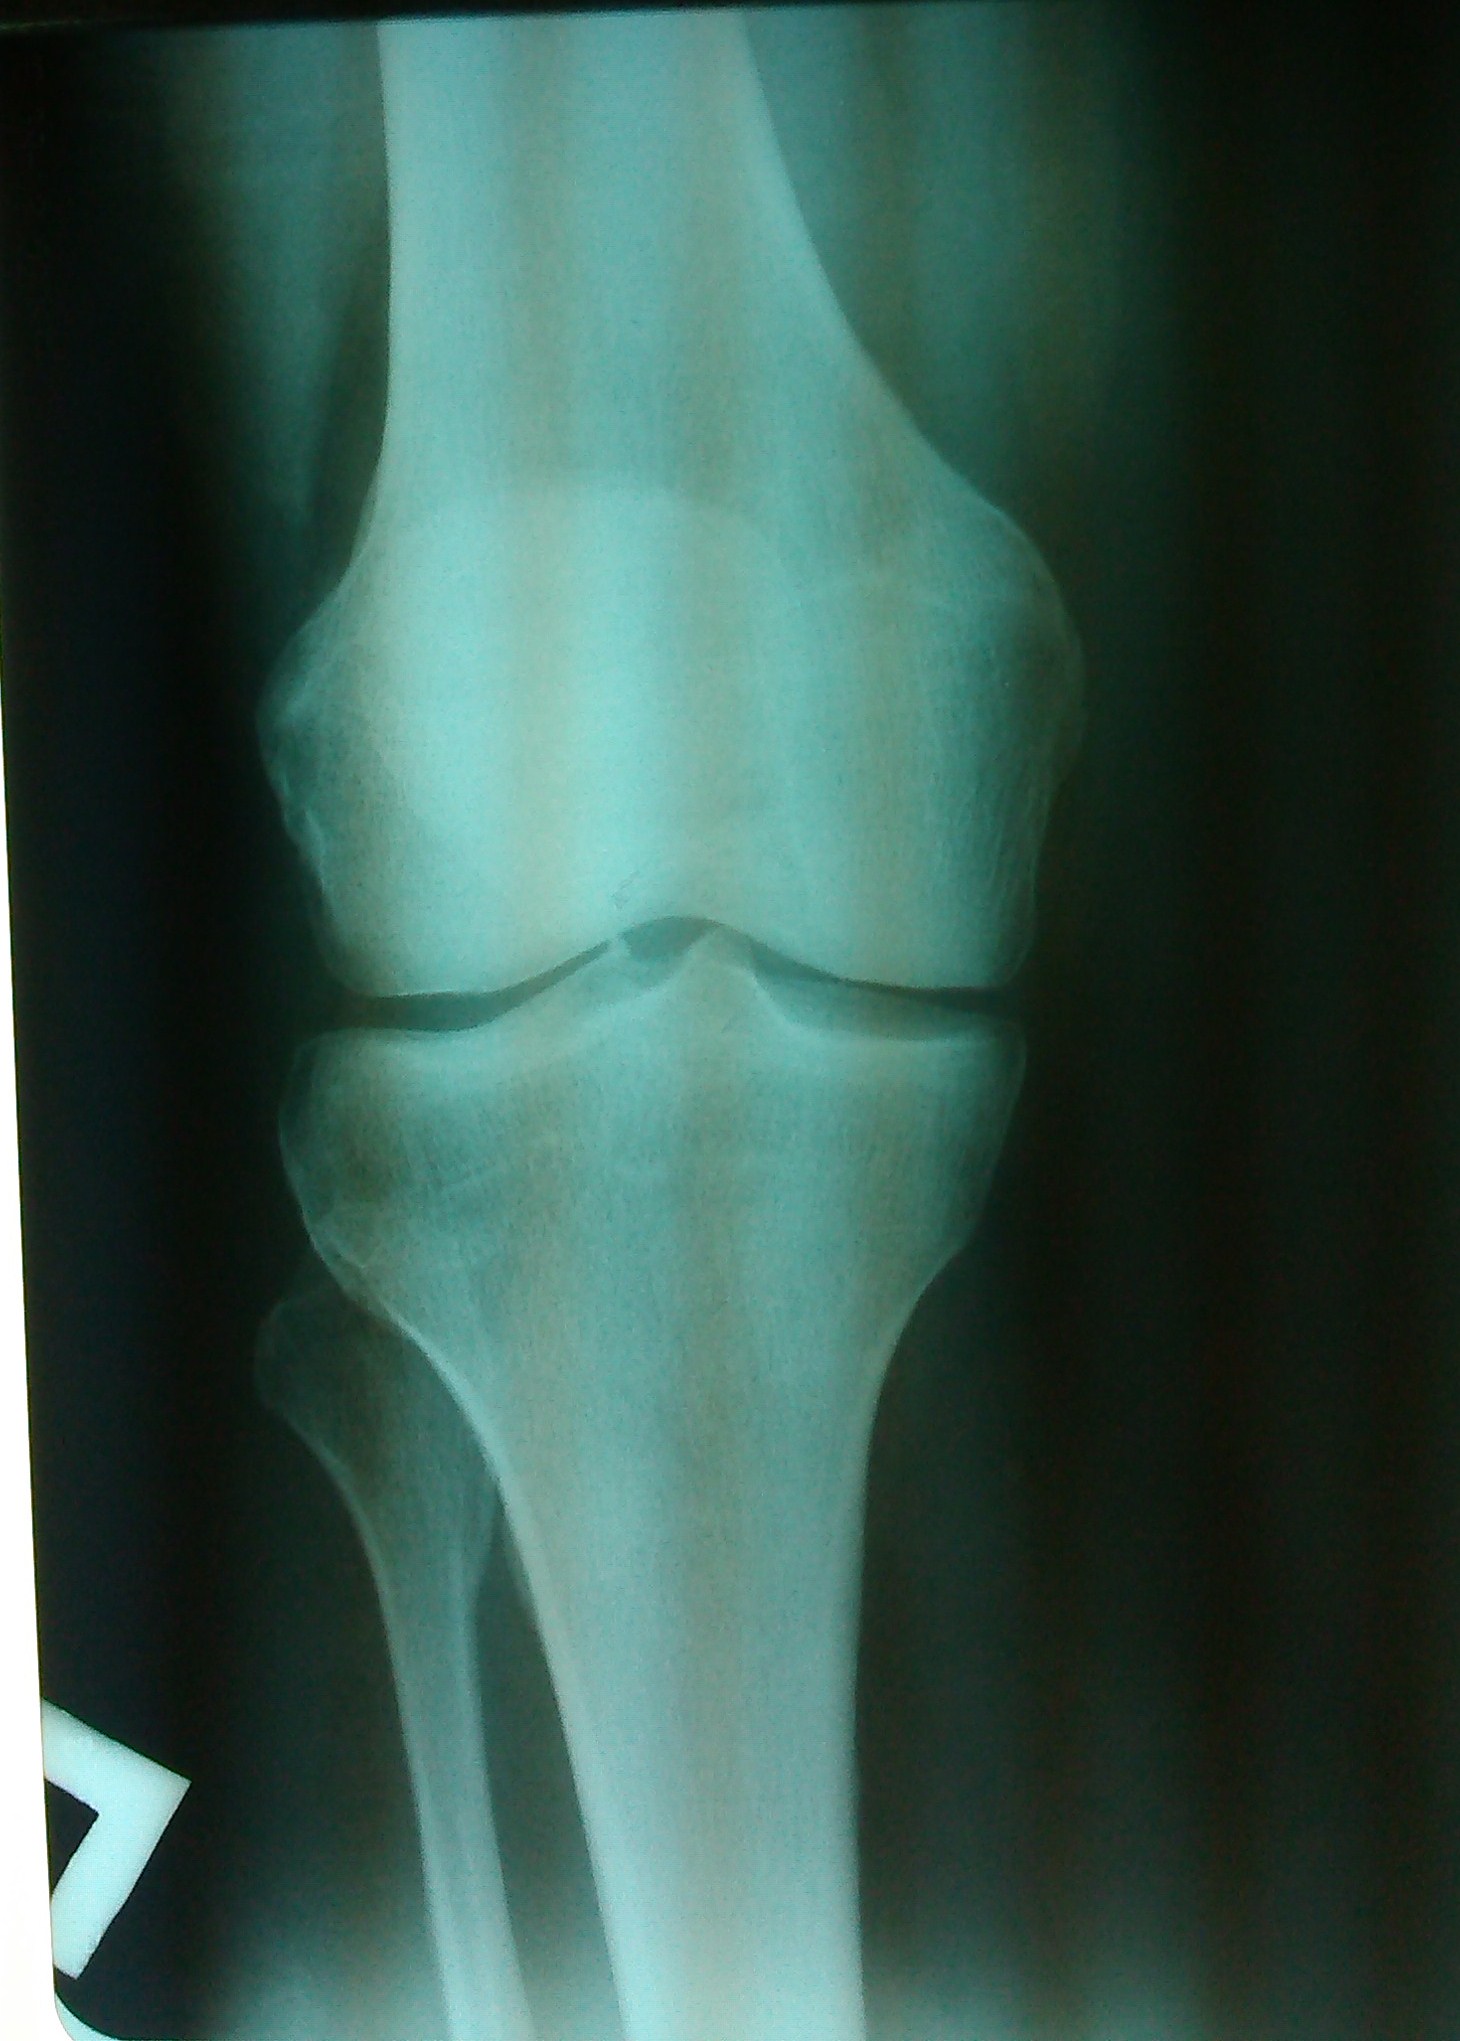 Рентген колена. Болезнь Гоффа коленного сустава рентген. Остеопойкилия коленного сустава рентген. Завороты коленного сустава рентген. Рентген коленной чашечки.